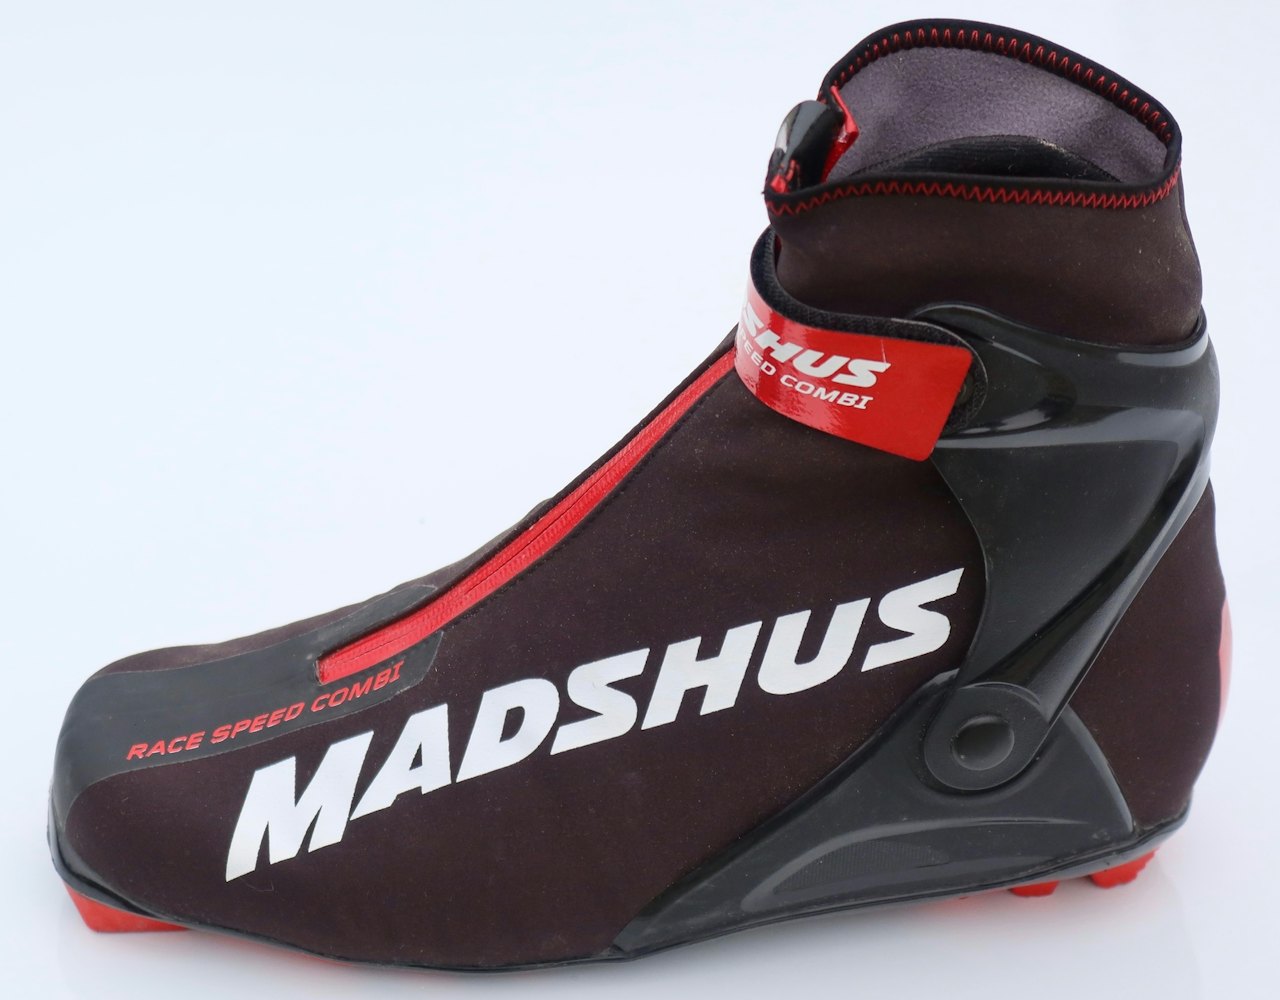 Test av Madshus Race Speed Combi